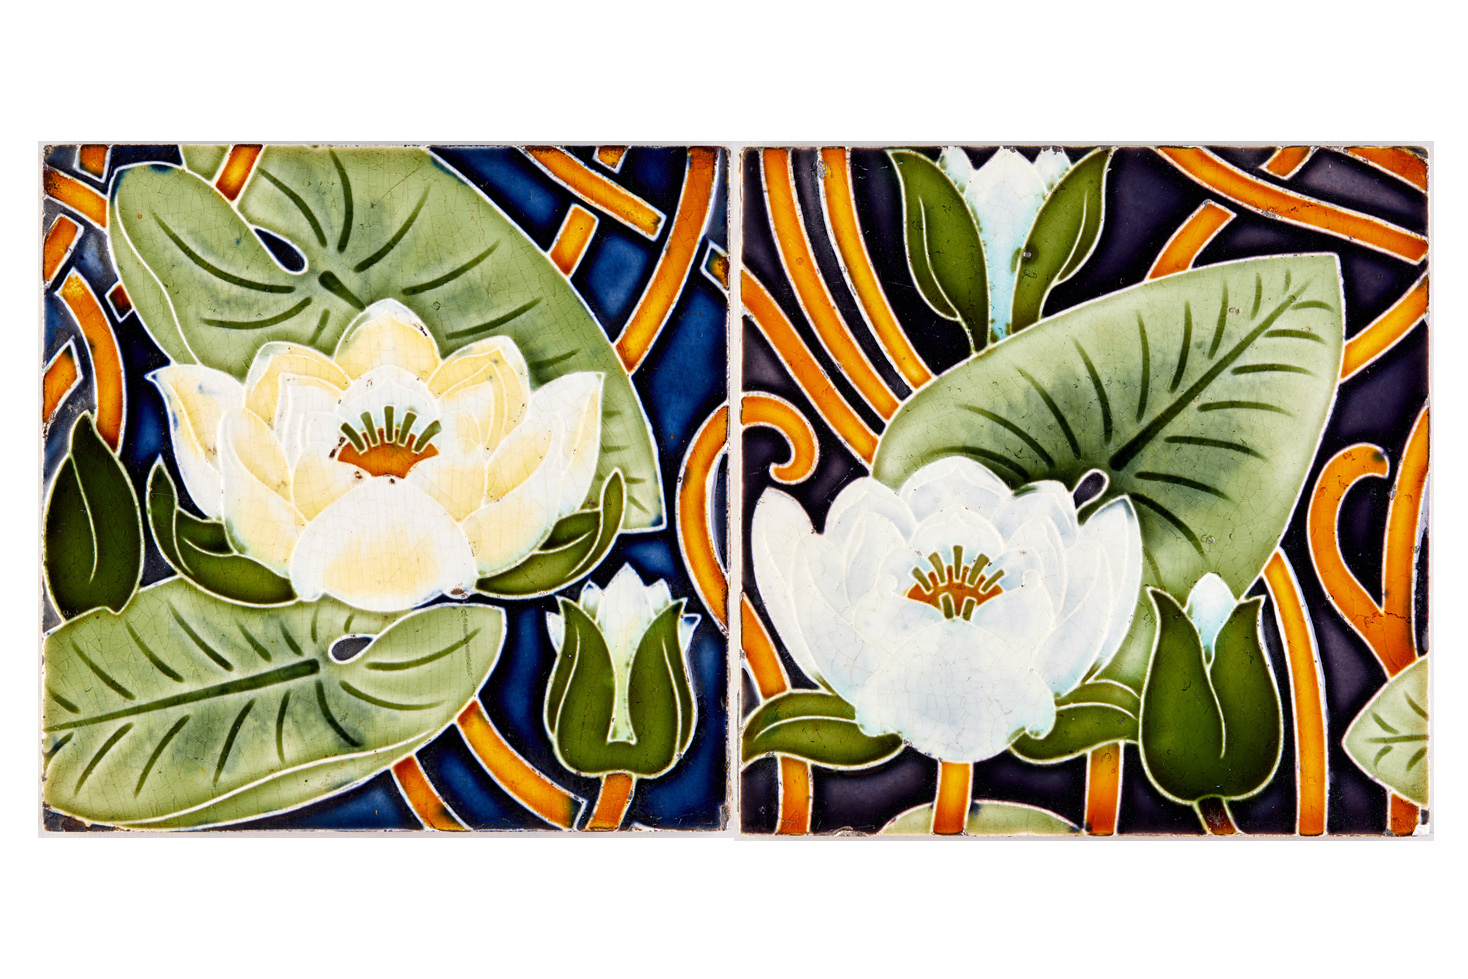 Seerosen - Blüten, Blätter, verschlungene Stengel. Unbegrenztes Ornamentbildmotiv (KreisMuseum Zons CC BY-NC-SA)